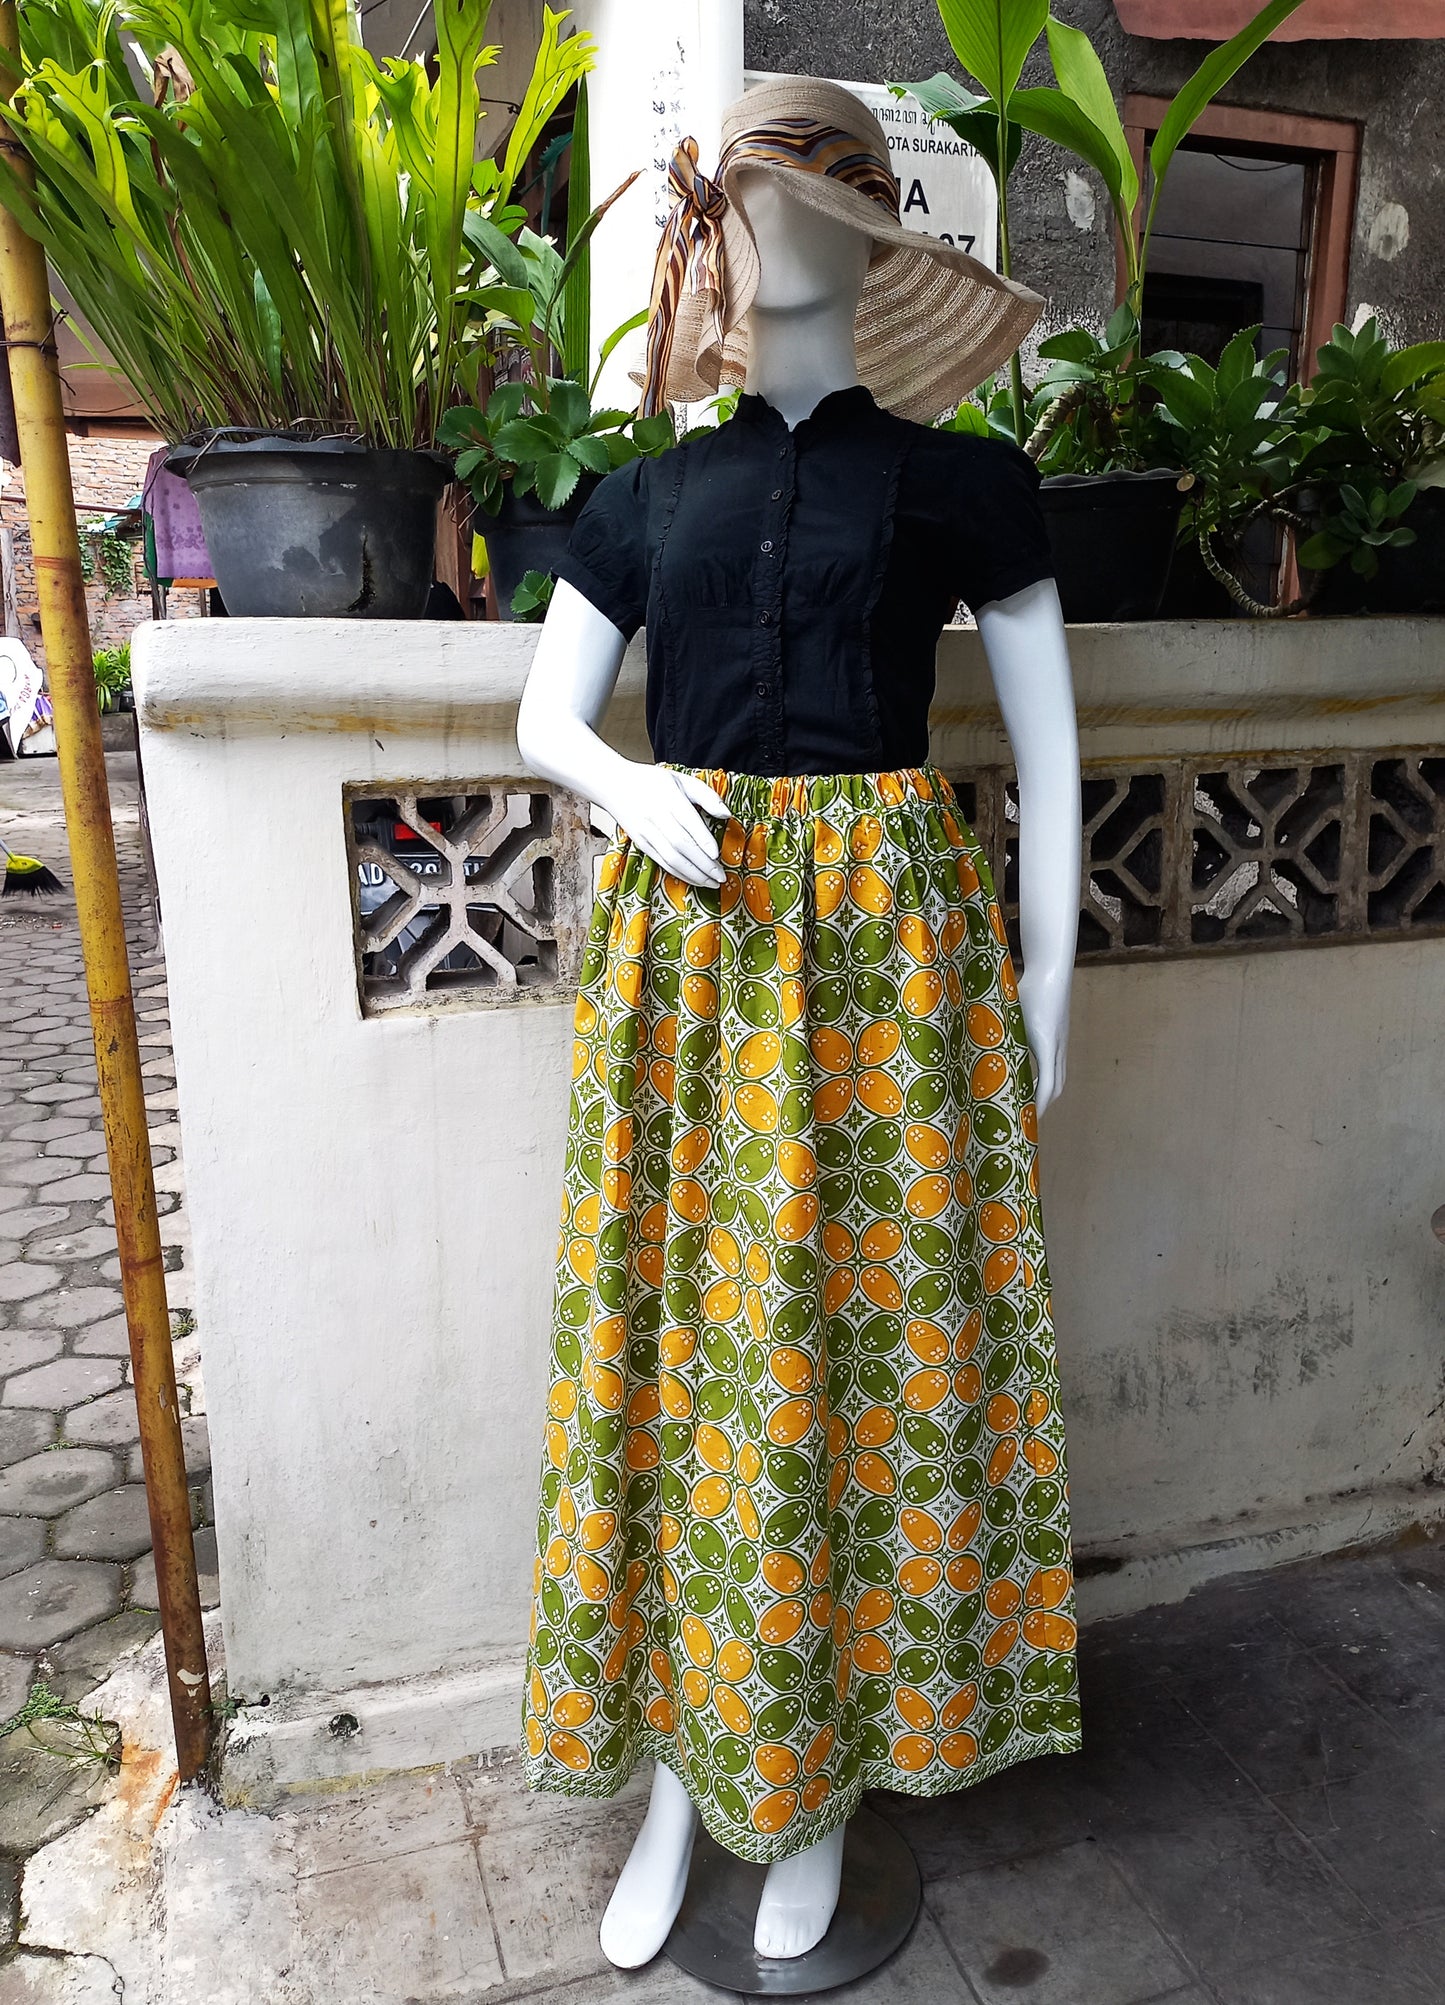 Indonesian batik Skirt, Summer skirt, green maxi skirt, holiday skirt